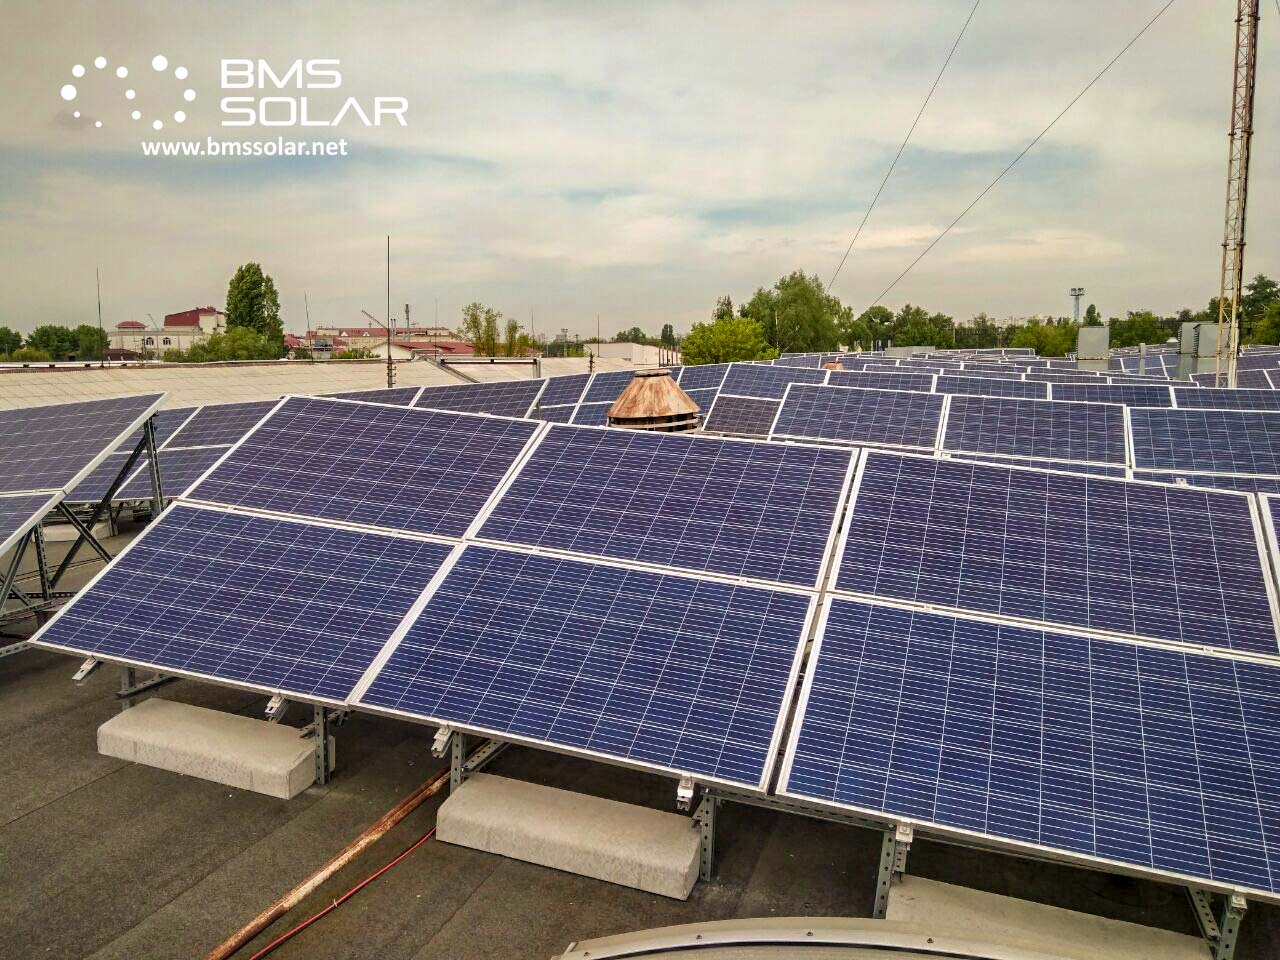 Портфолио — Солнечная электростанция для бизнеса, 2019